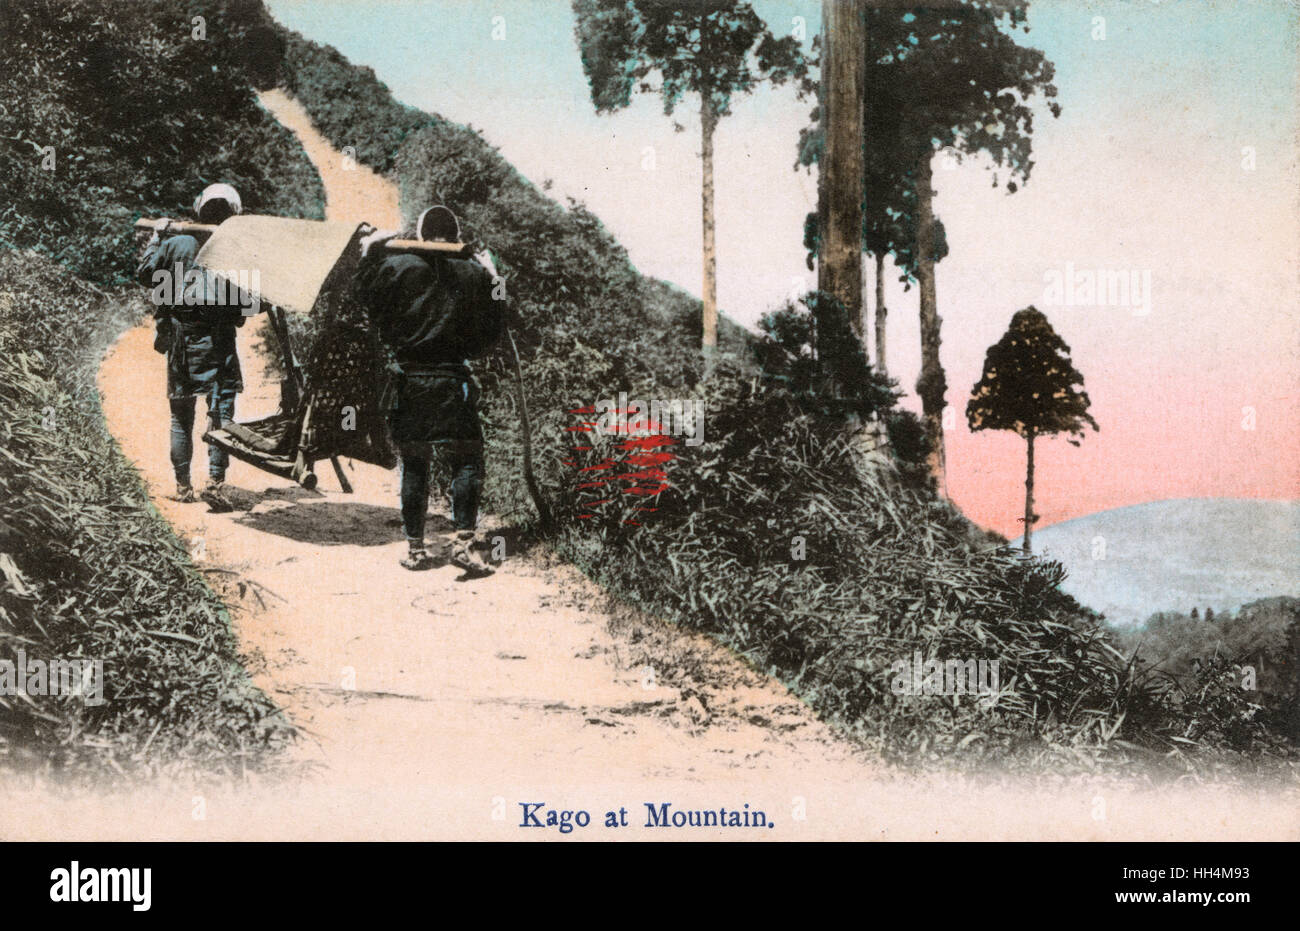 Japan - Ein Kago-Wurf, der den Berg hinauf getragen wird Stockfoto